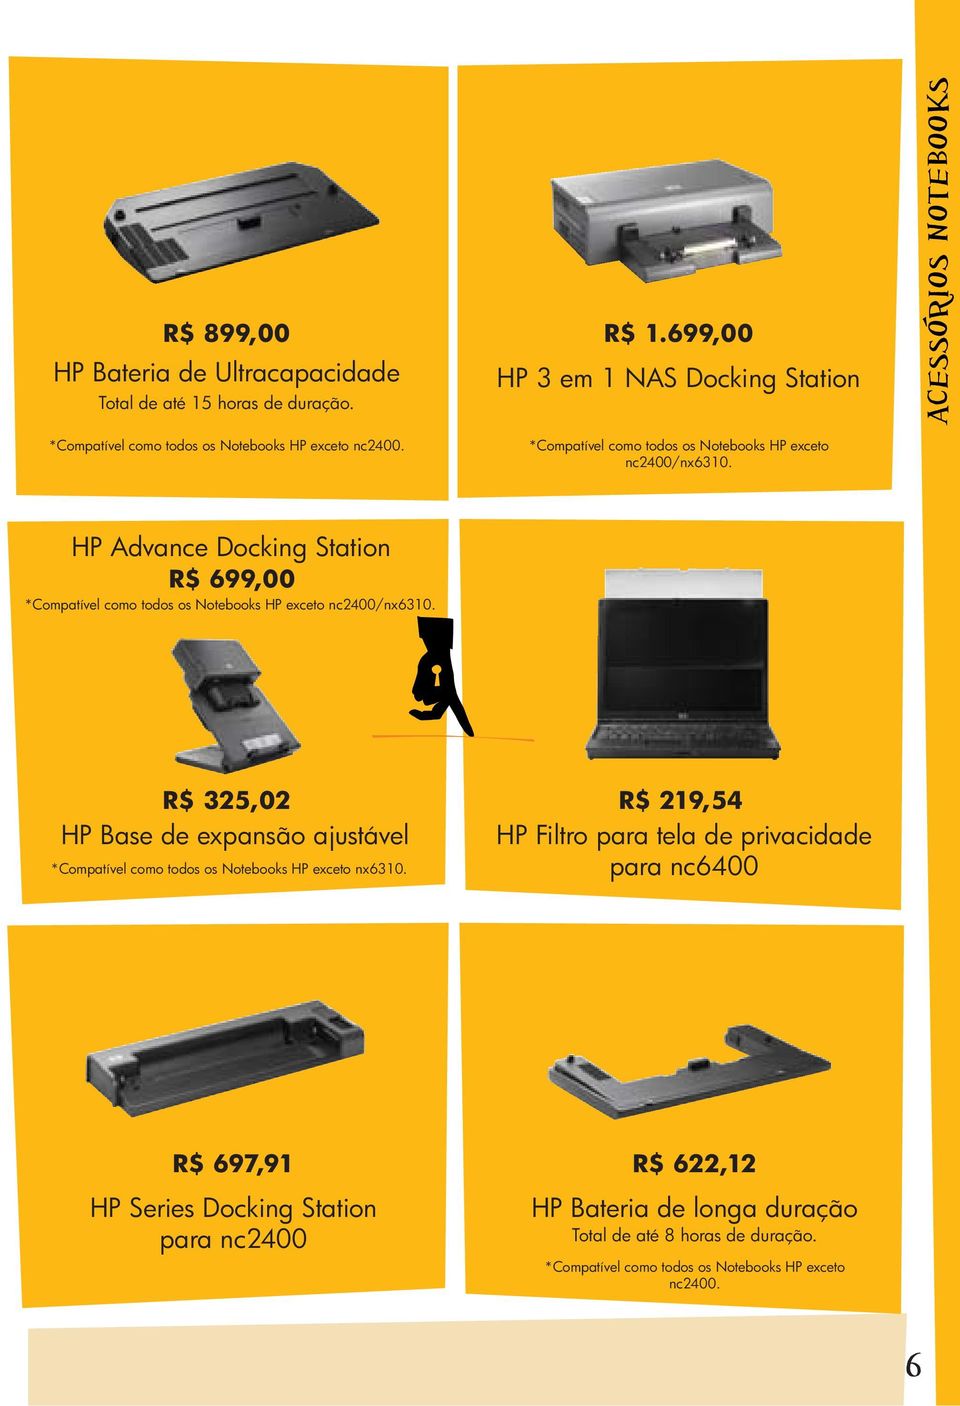 ACESSORIOS NOTEBOOKS HP Advance Docking Station R$ 699,00 *Compatível como todos os Notebooks HP exceto nc2400/nx6310.